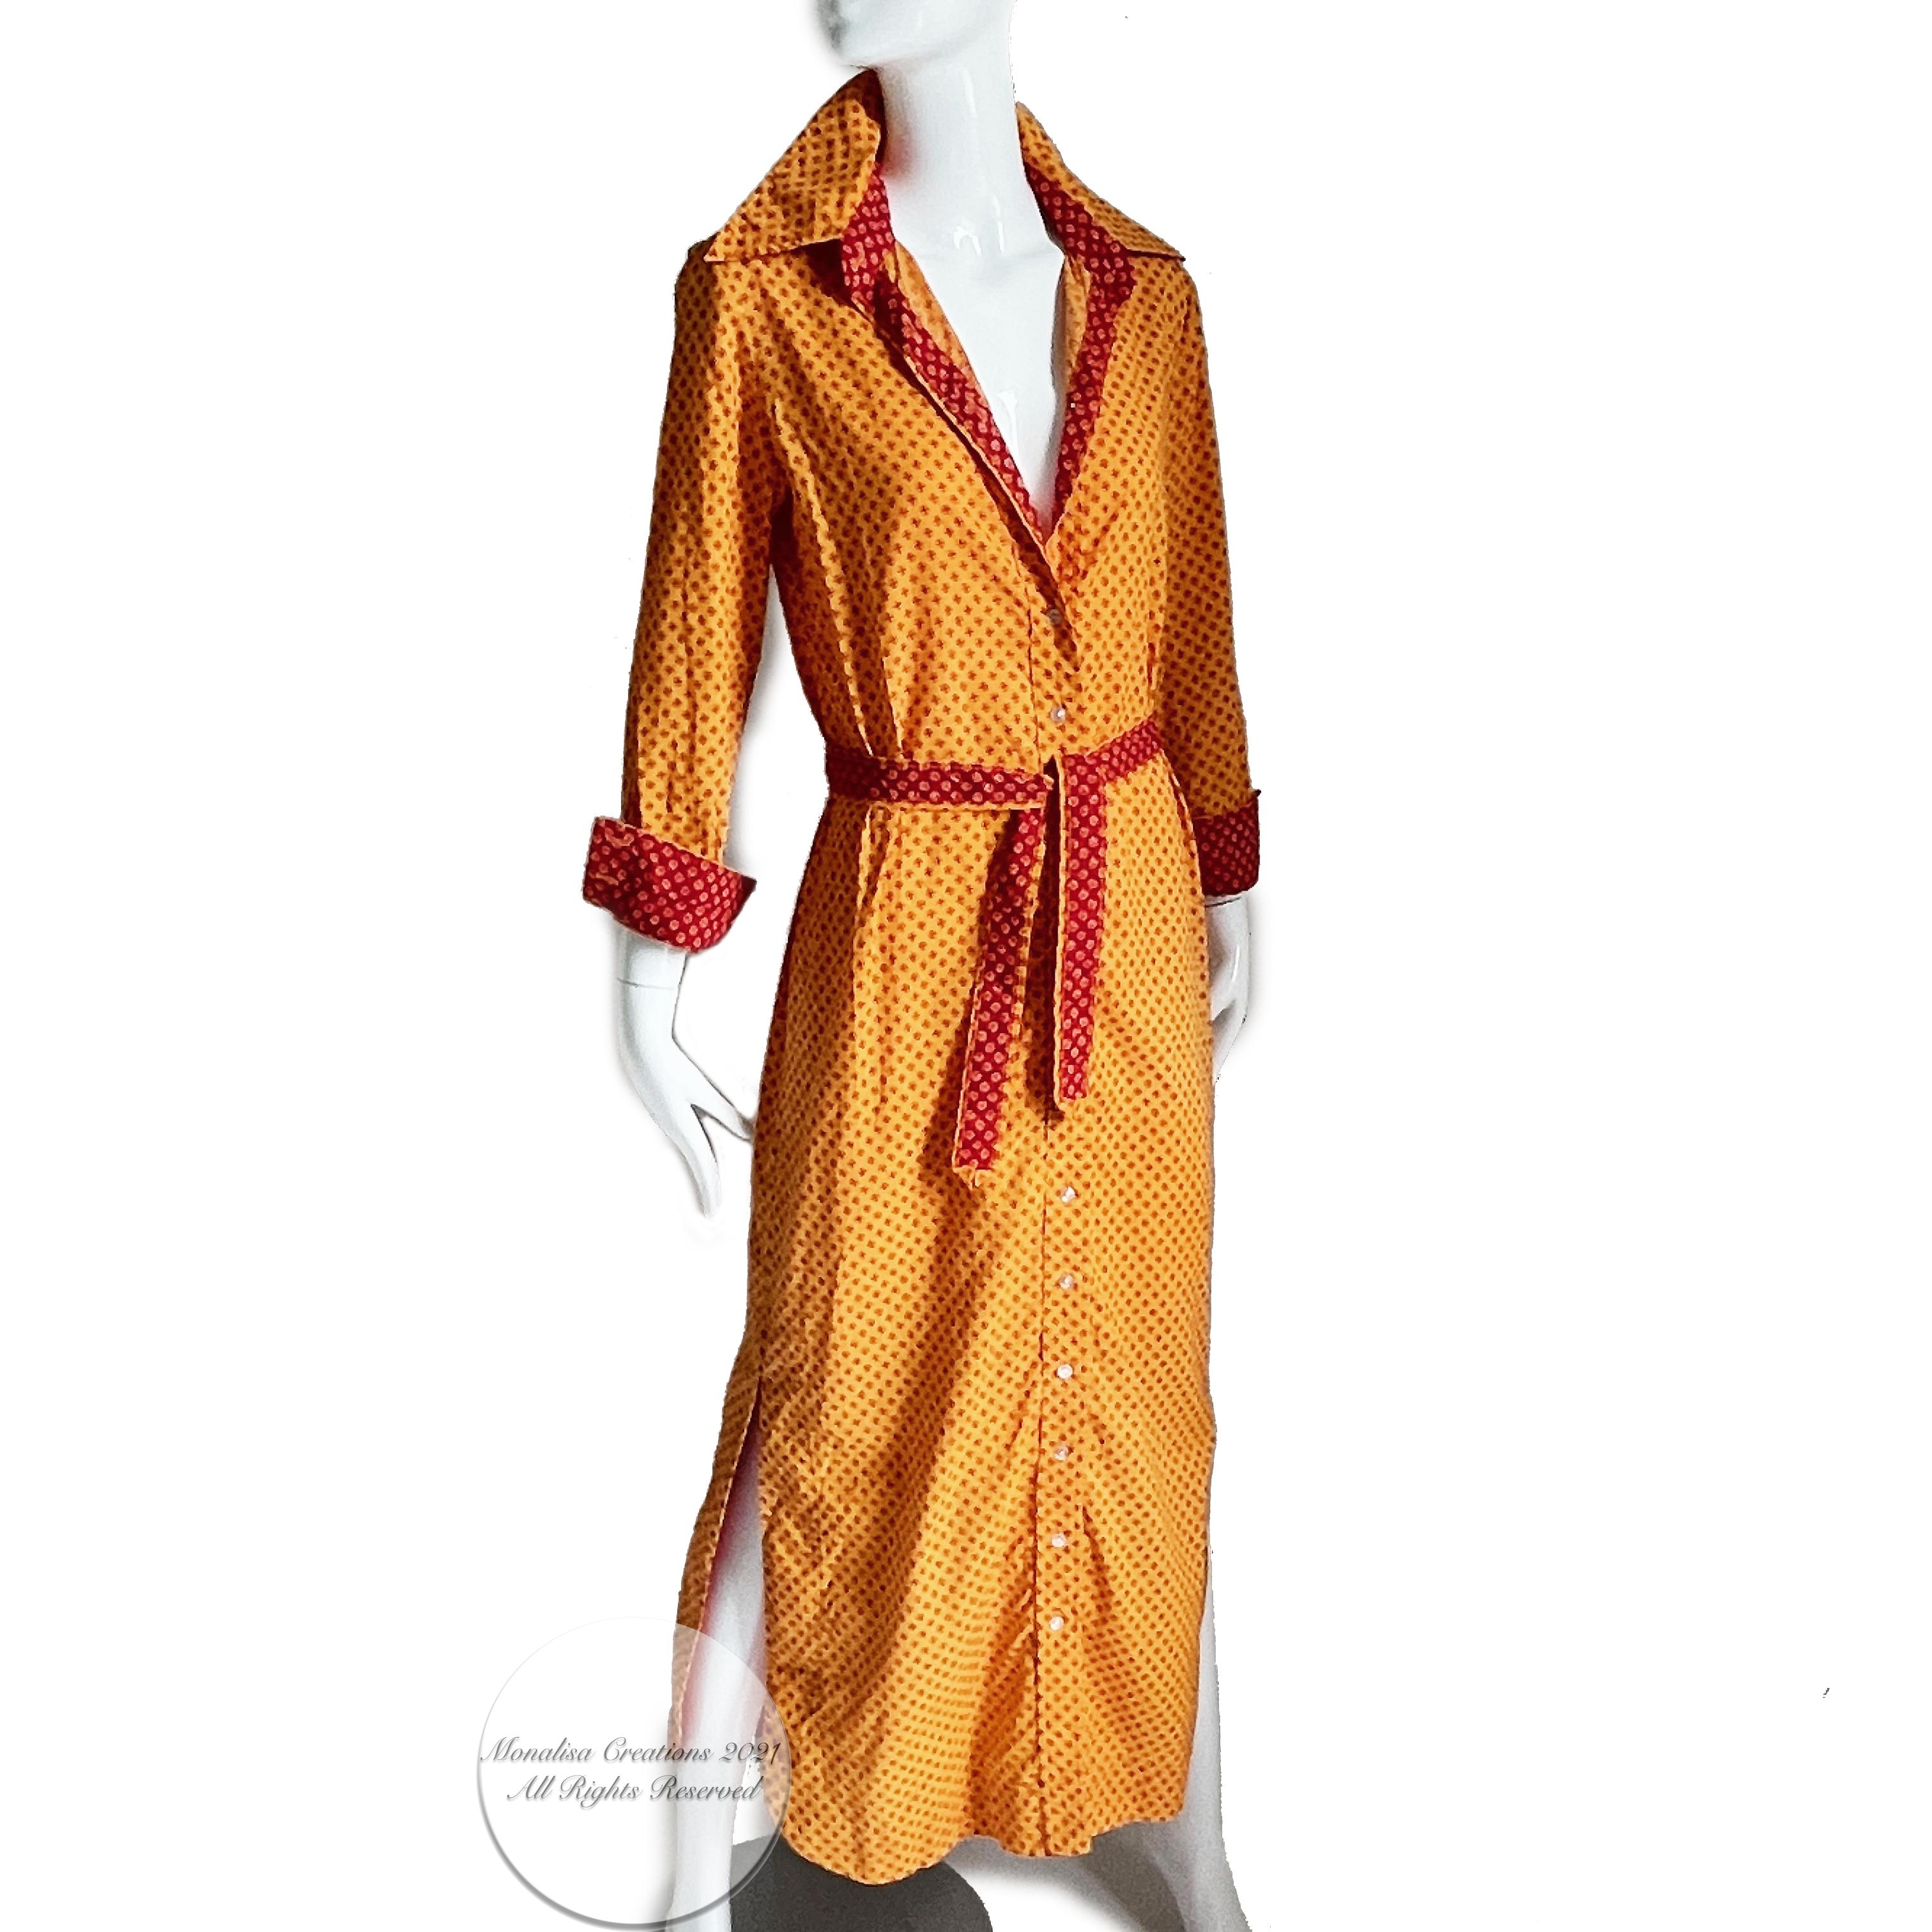 Geoffrey Beene Dress Button Front Cotton Shirtwaist + Belt Bold Daisy Print 70s 1